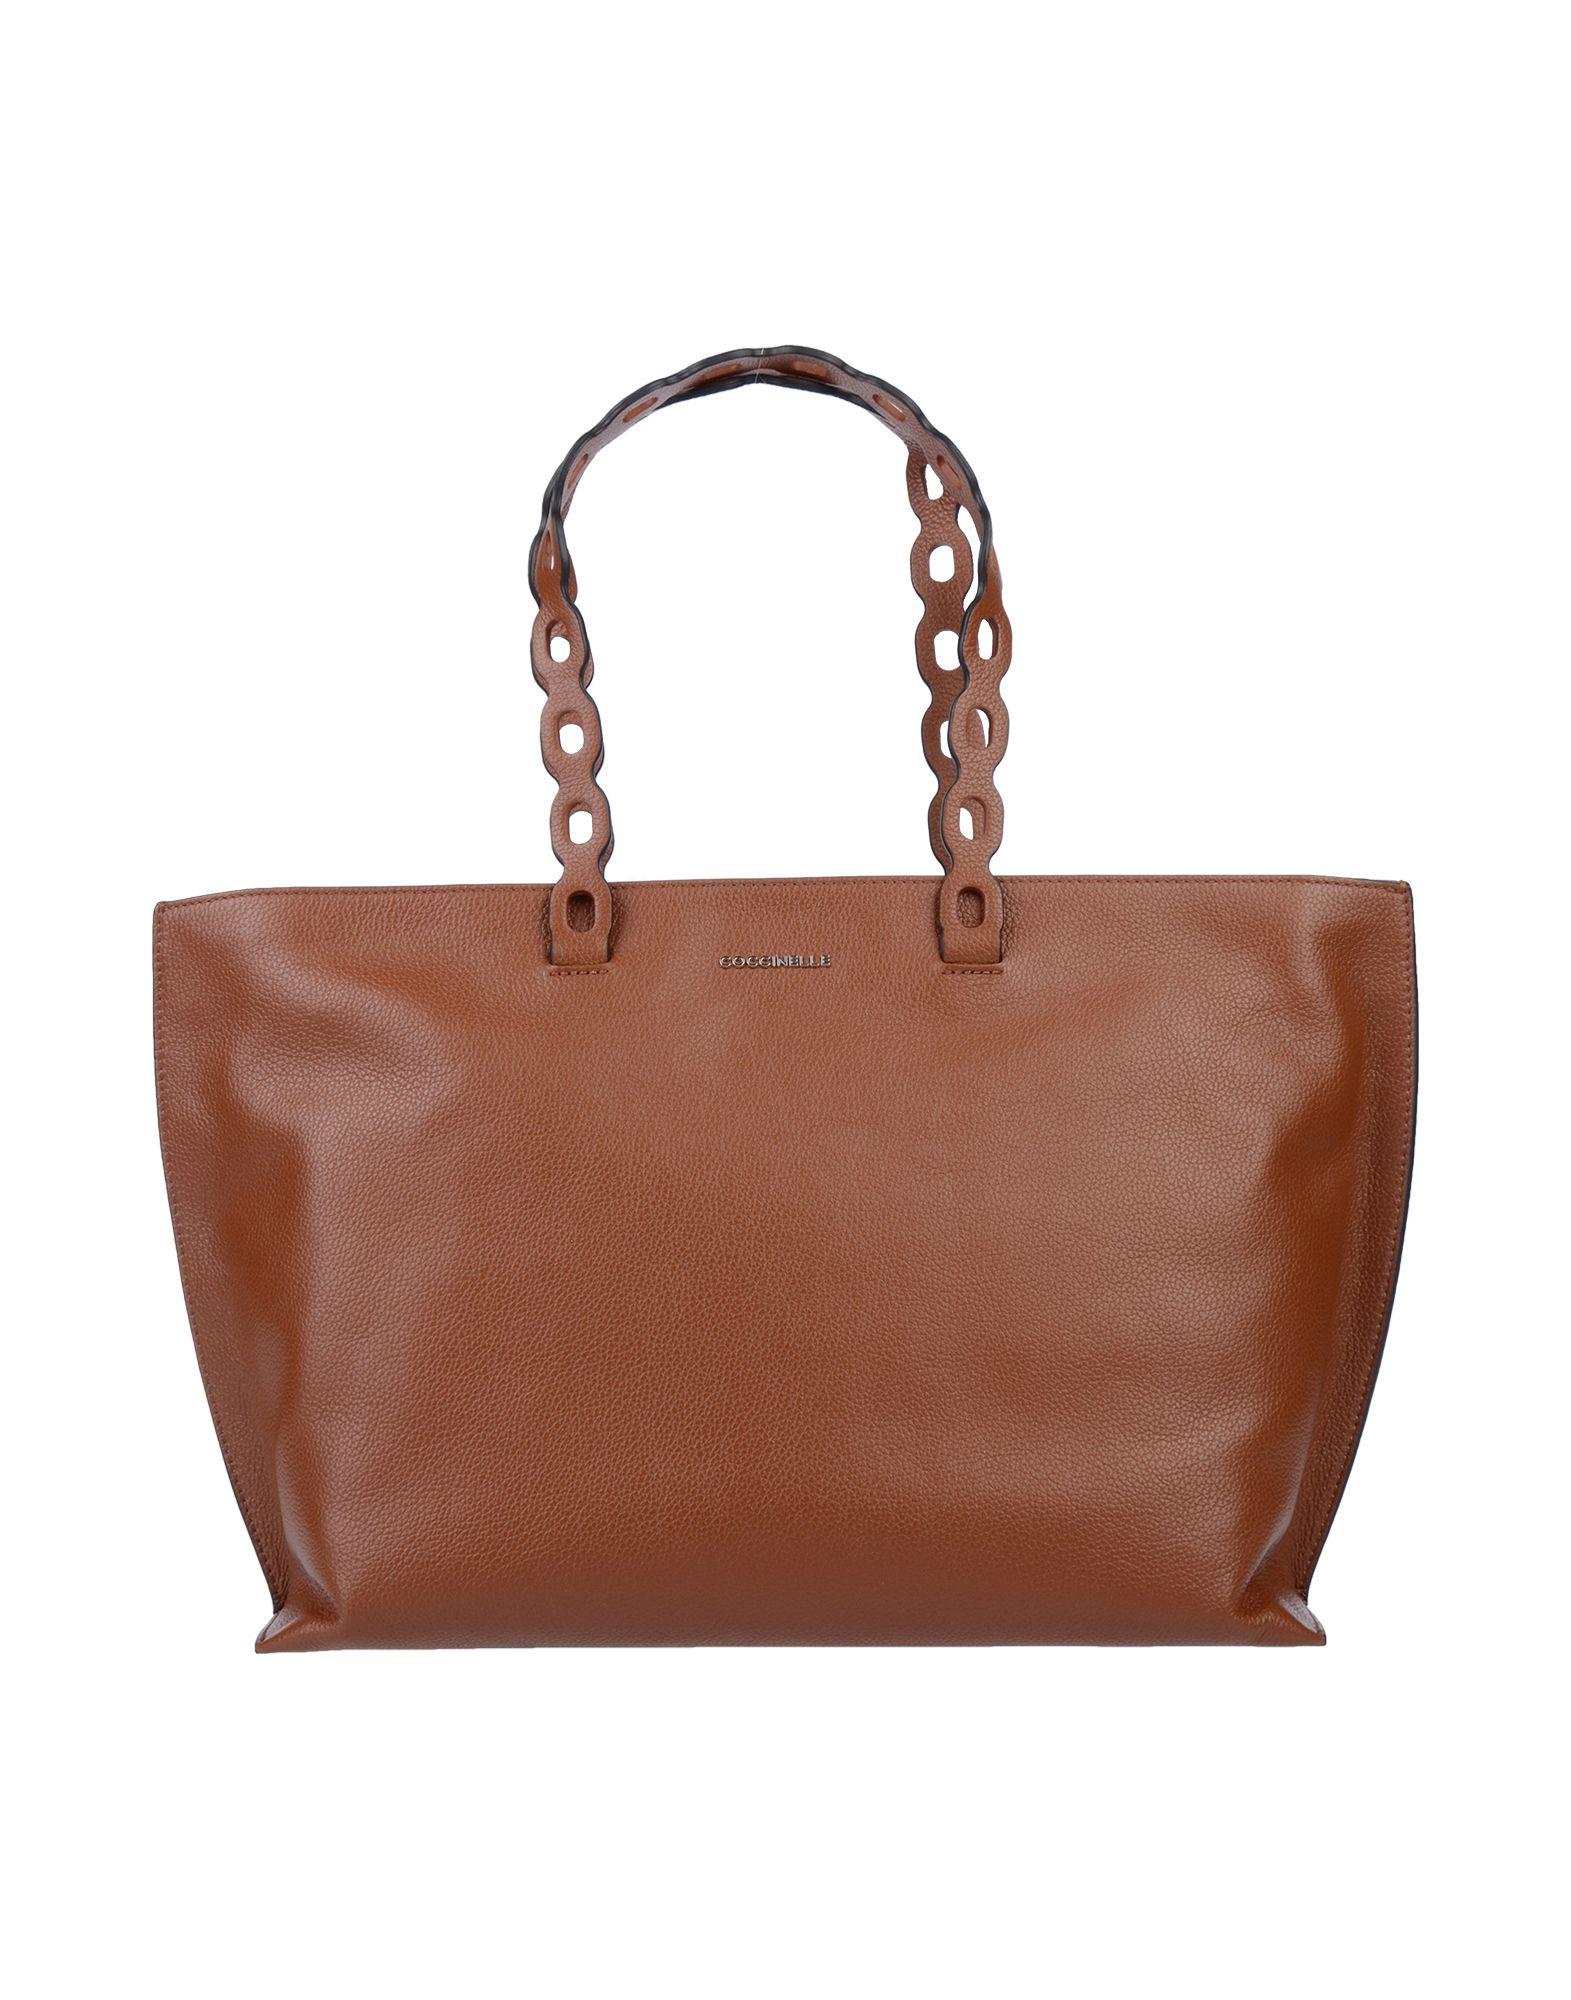 Coccinelle Handbag in Brown - Lyst